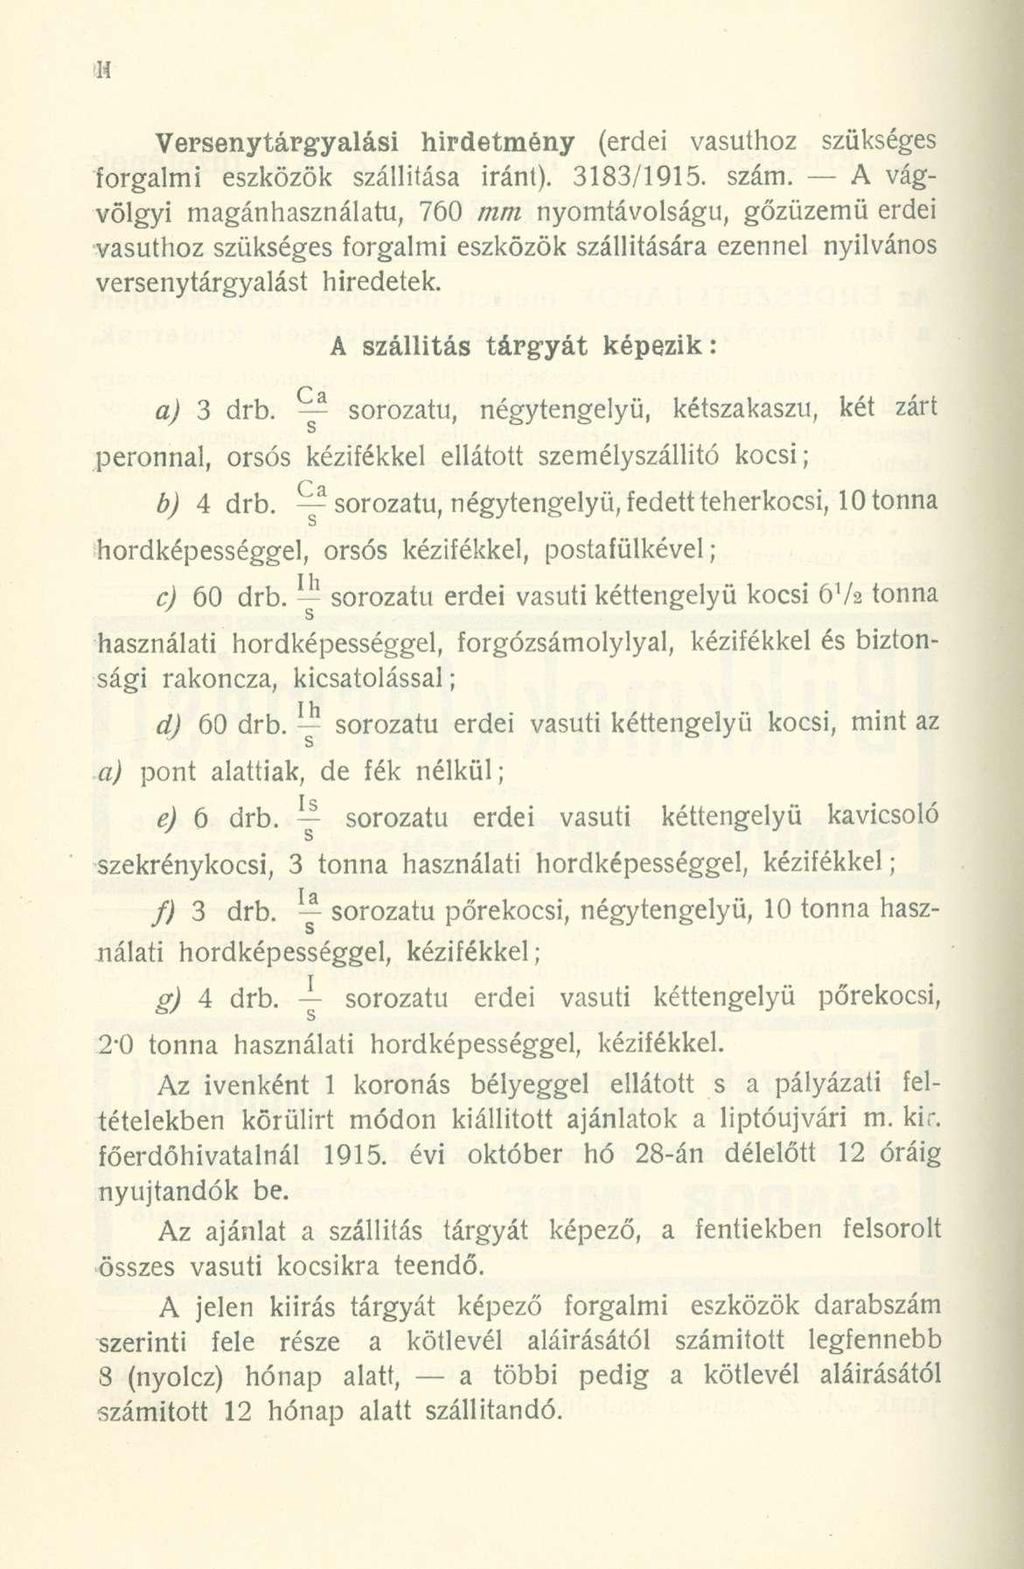 H Versenytárgyalási hirdetmény (erdei vasúthoz szükséges forgalmi eszközök szállítása iránt). 3183/1915. szám.